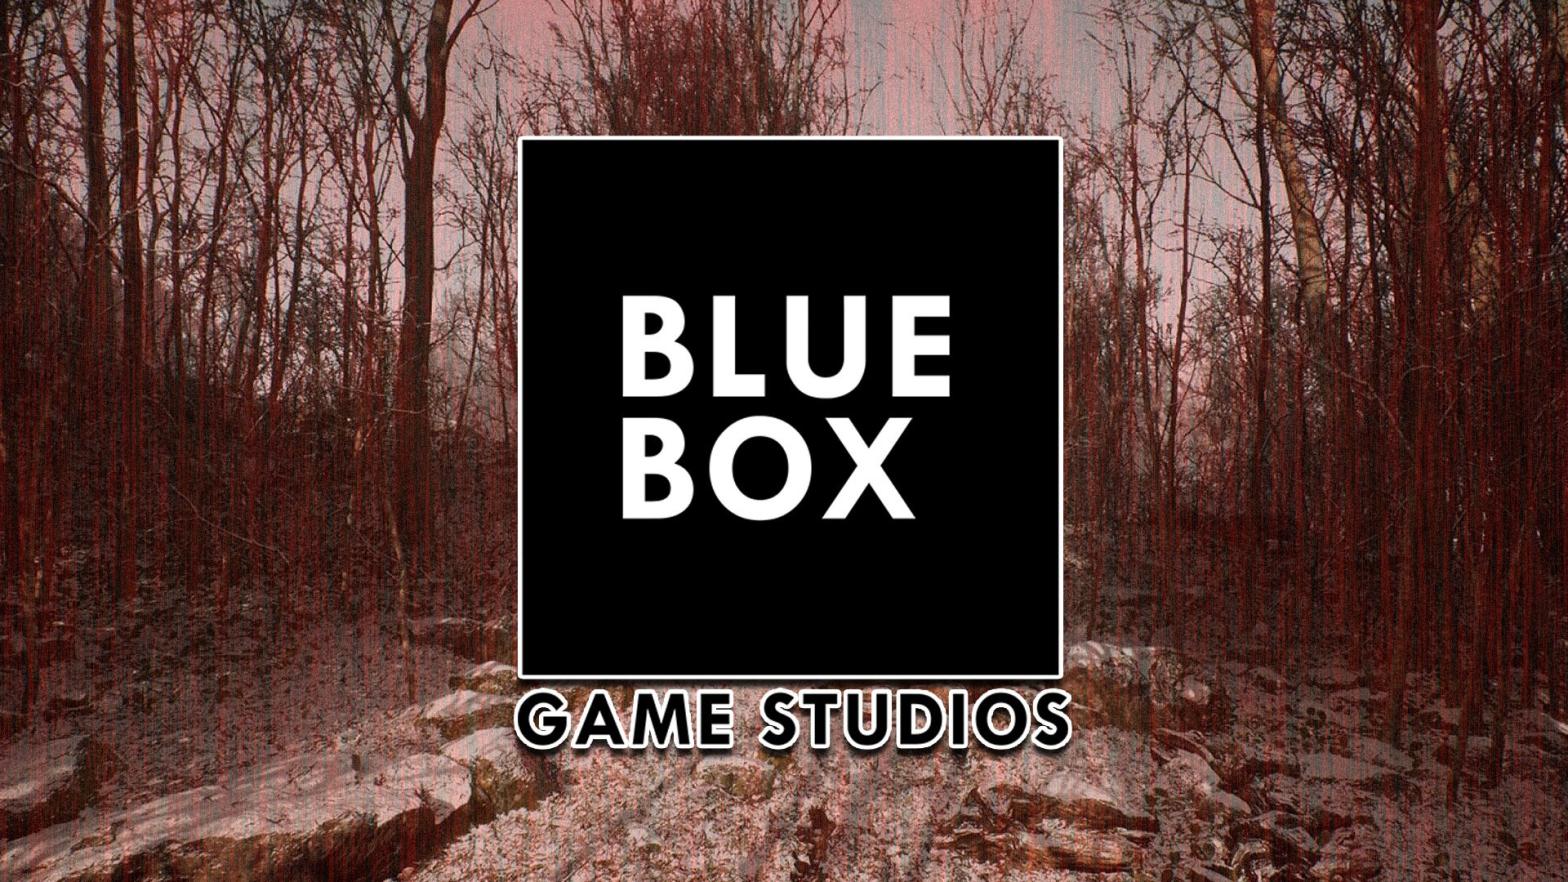 Image: Blue Box Game Studios / Kotaku